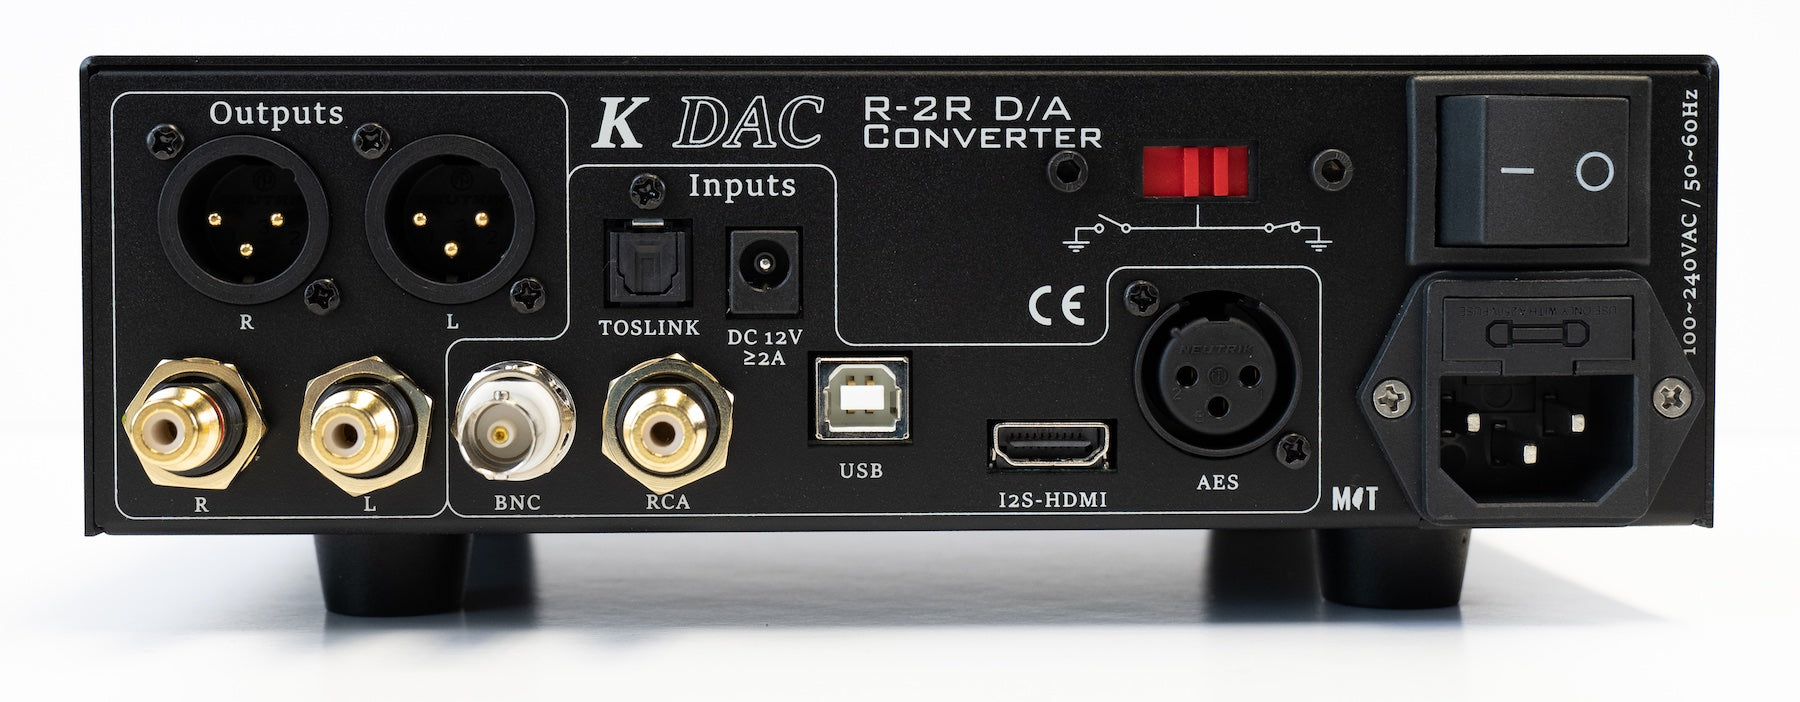 ΝΕΟ! Eleven Audio K DAC R-2R Μετατροπέας ψηφιακού σε αναλογικό